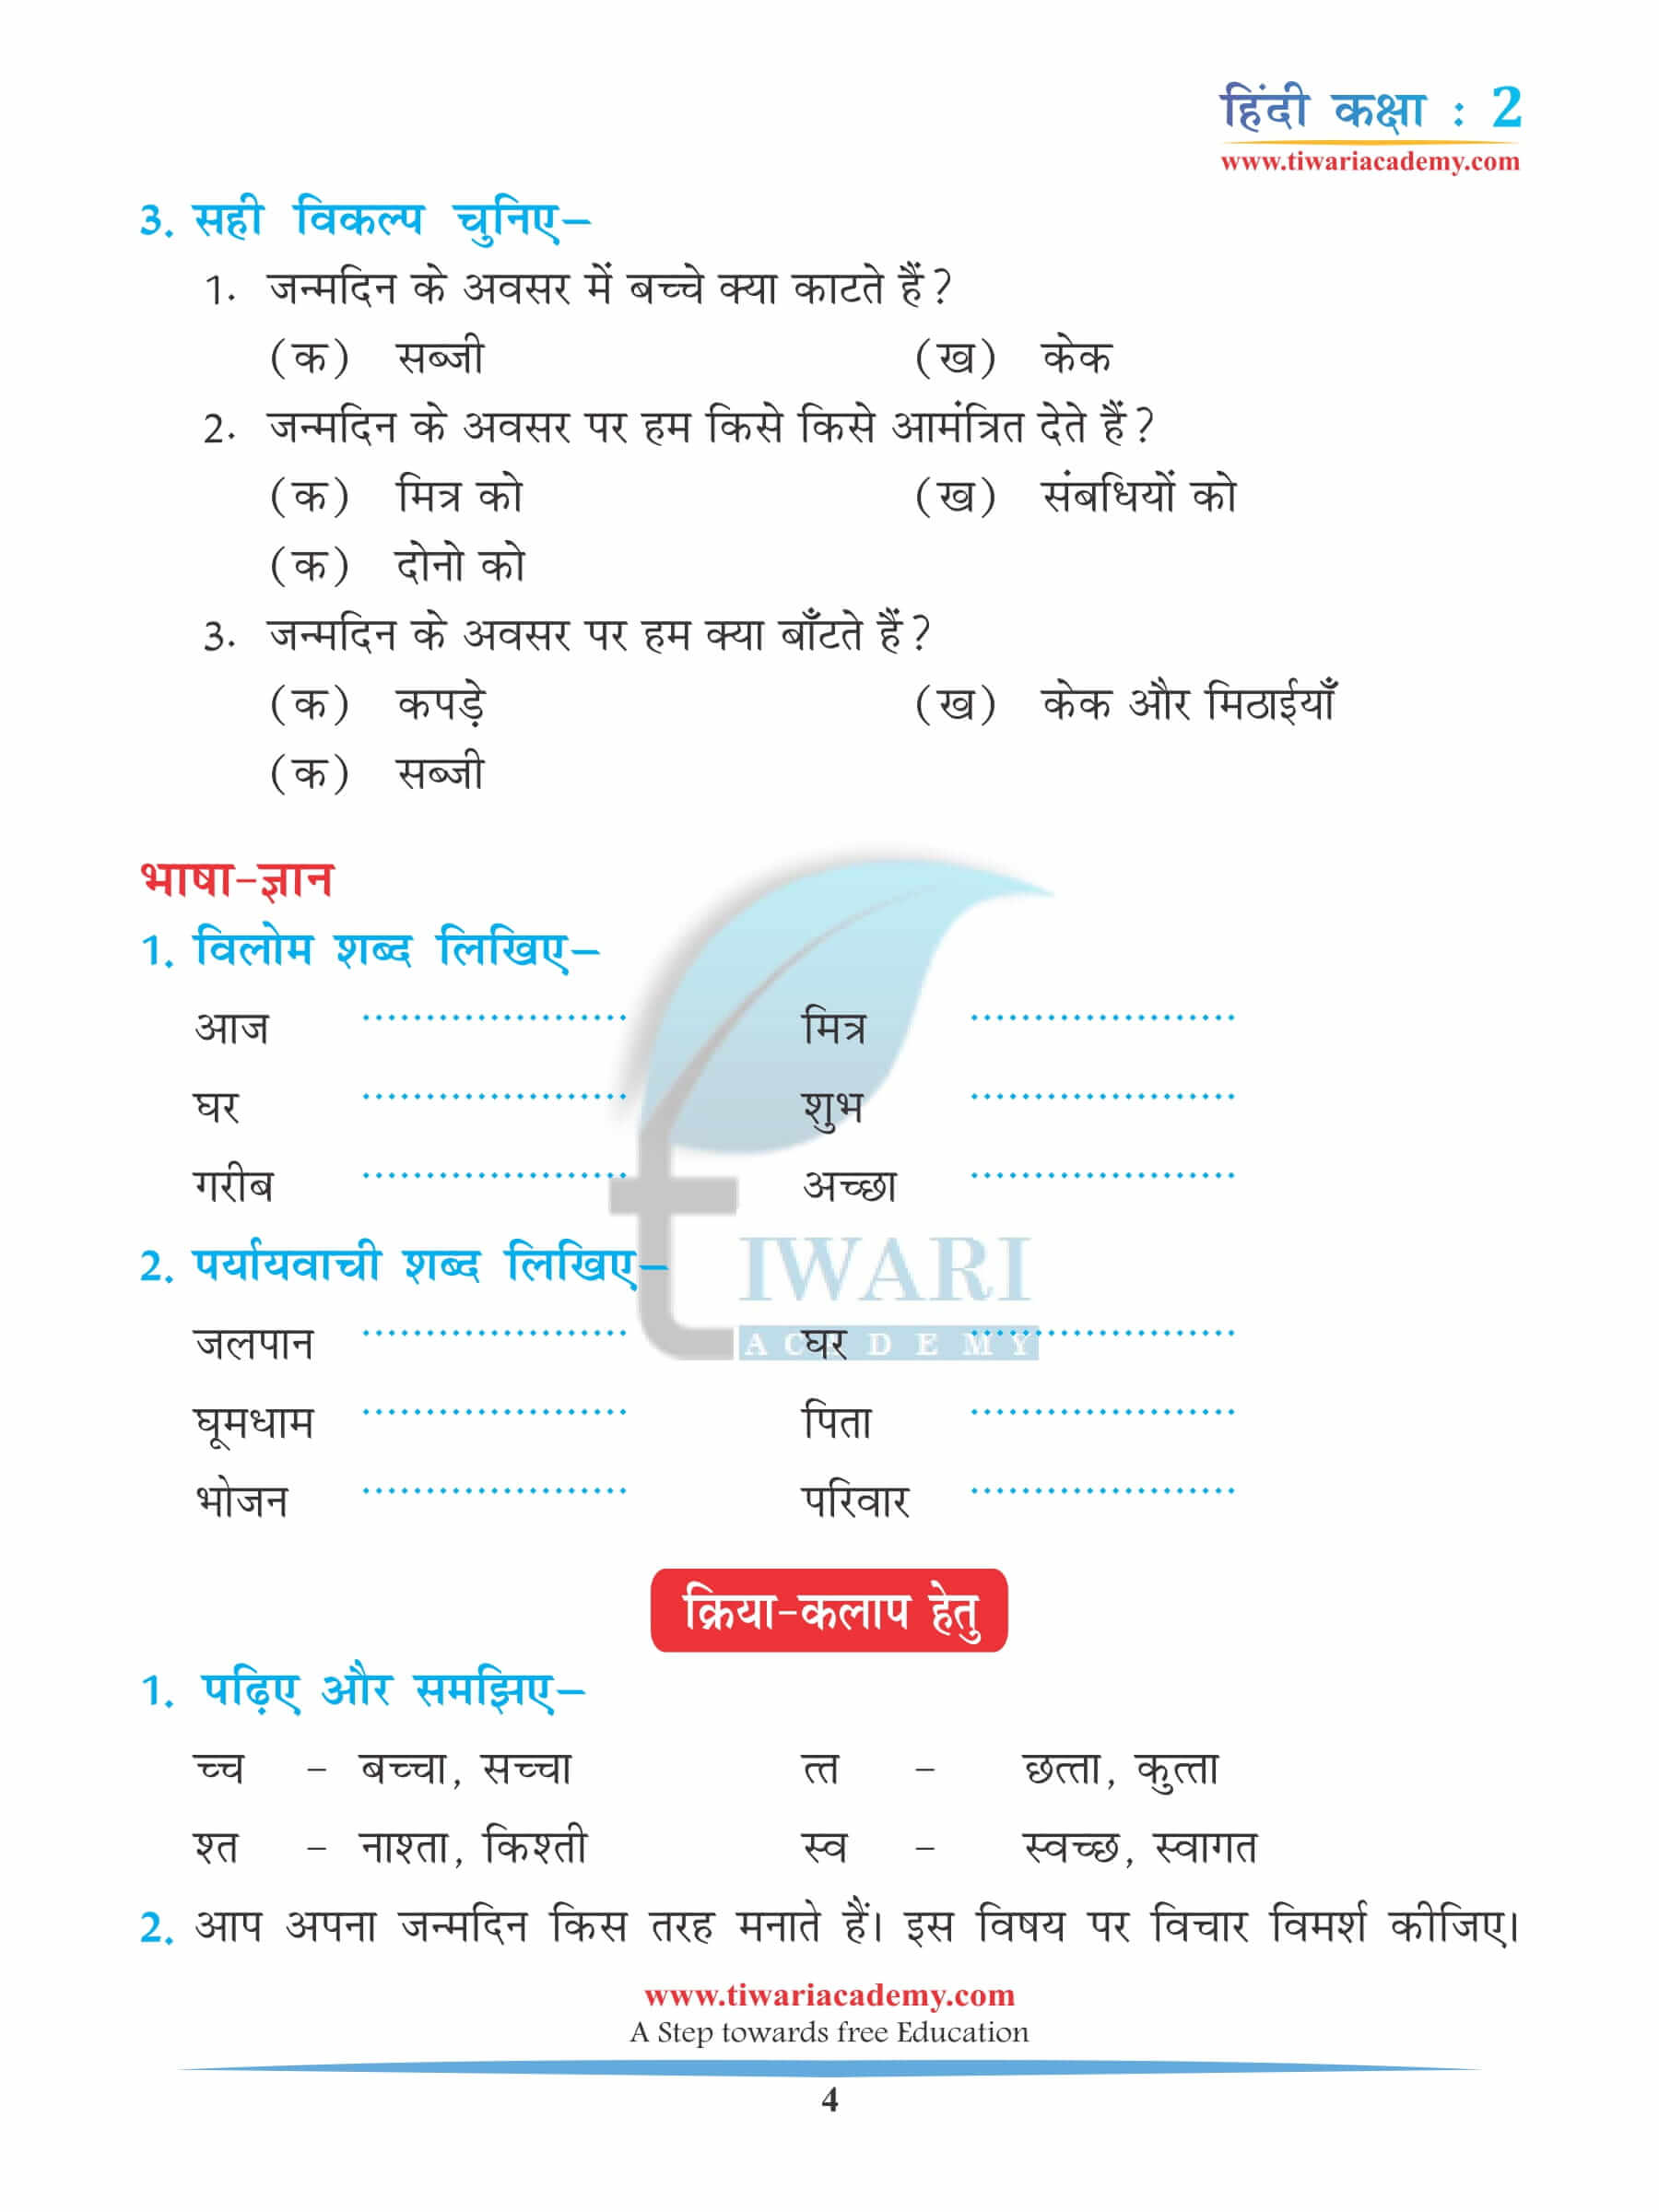 कक्षा 2 हिंदी अध्याय 4 अभ्यास के लिए प्रश्न